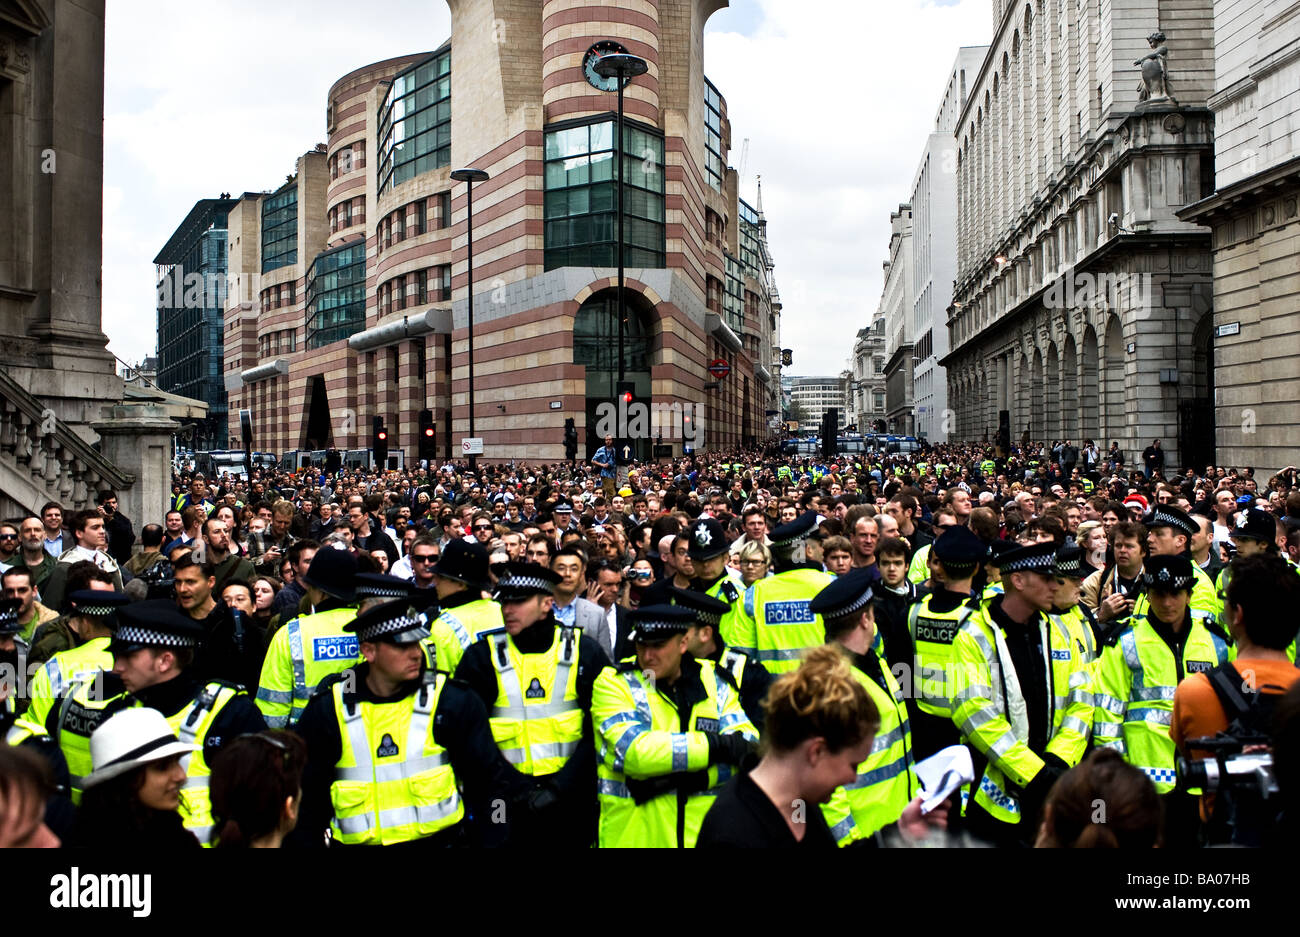 Metropolitan Police Cordon zurückhalten Demonstranten bei der G20-Demonstration in der City of London. Stockfoto